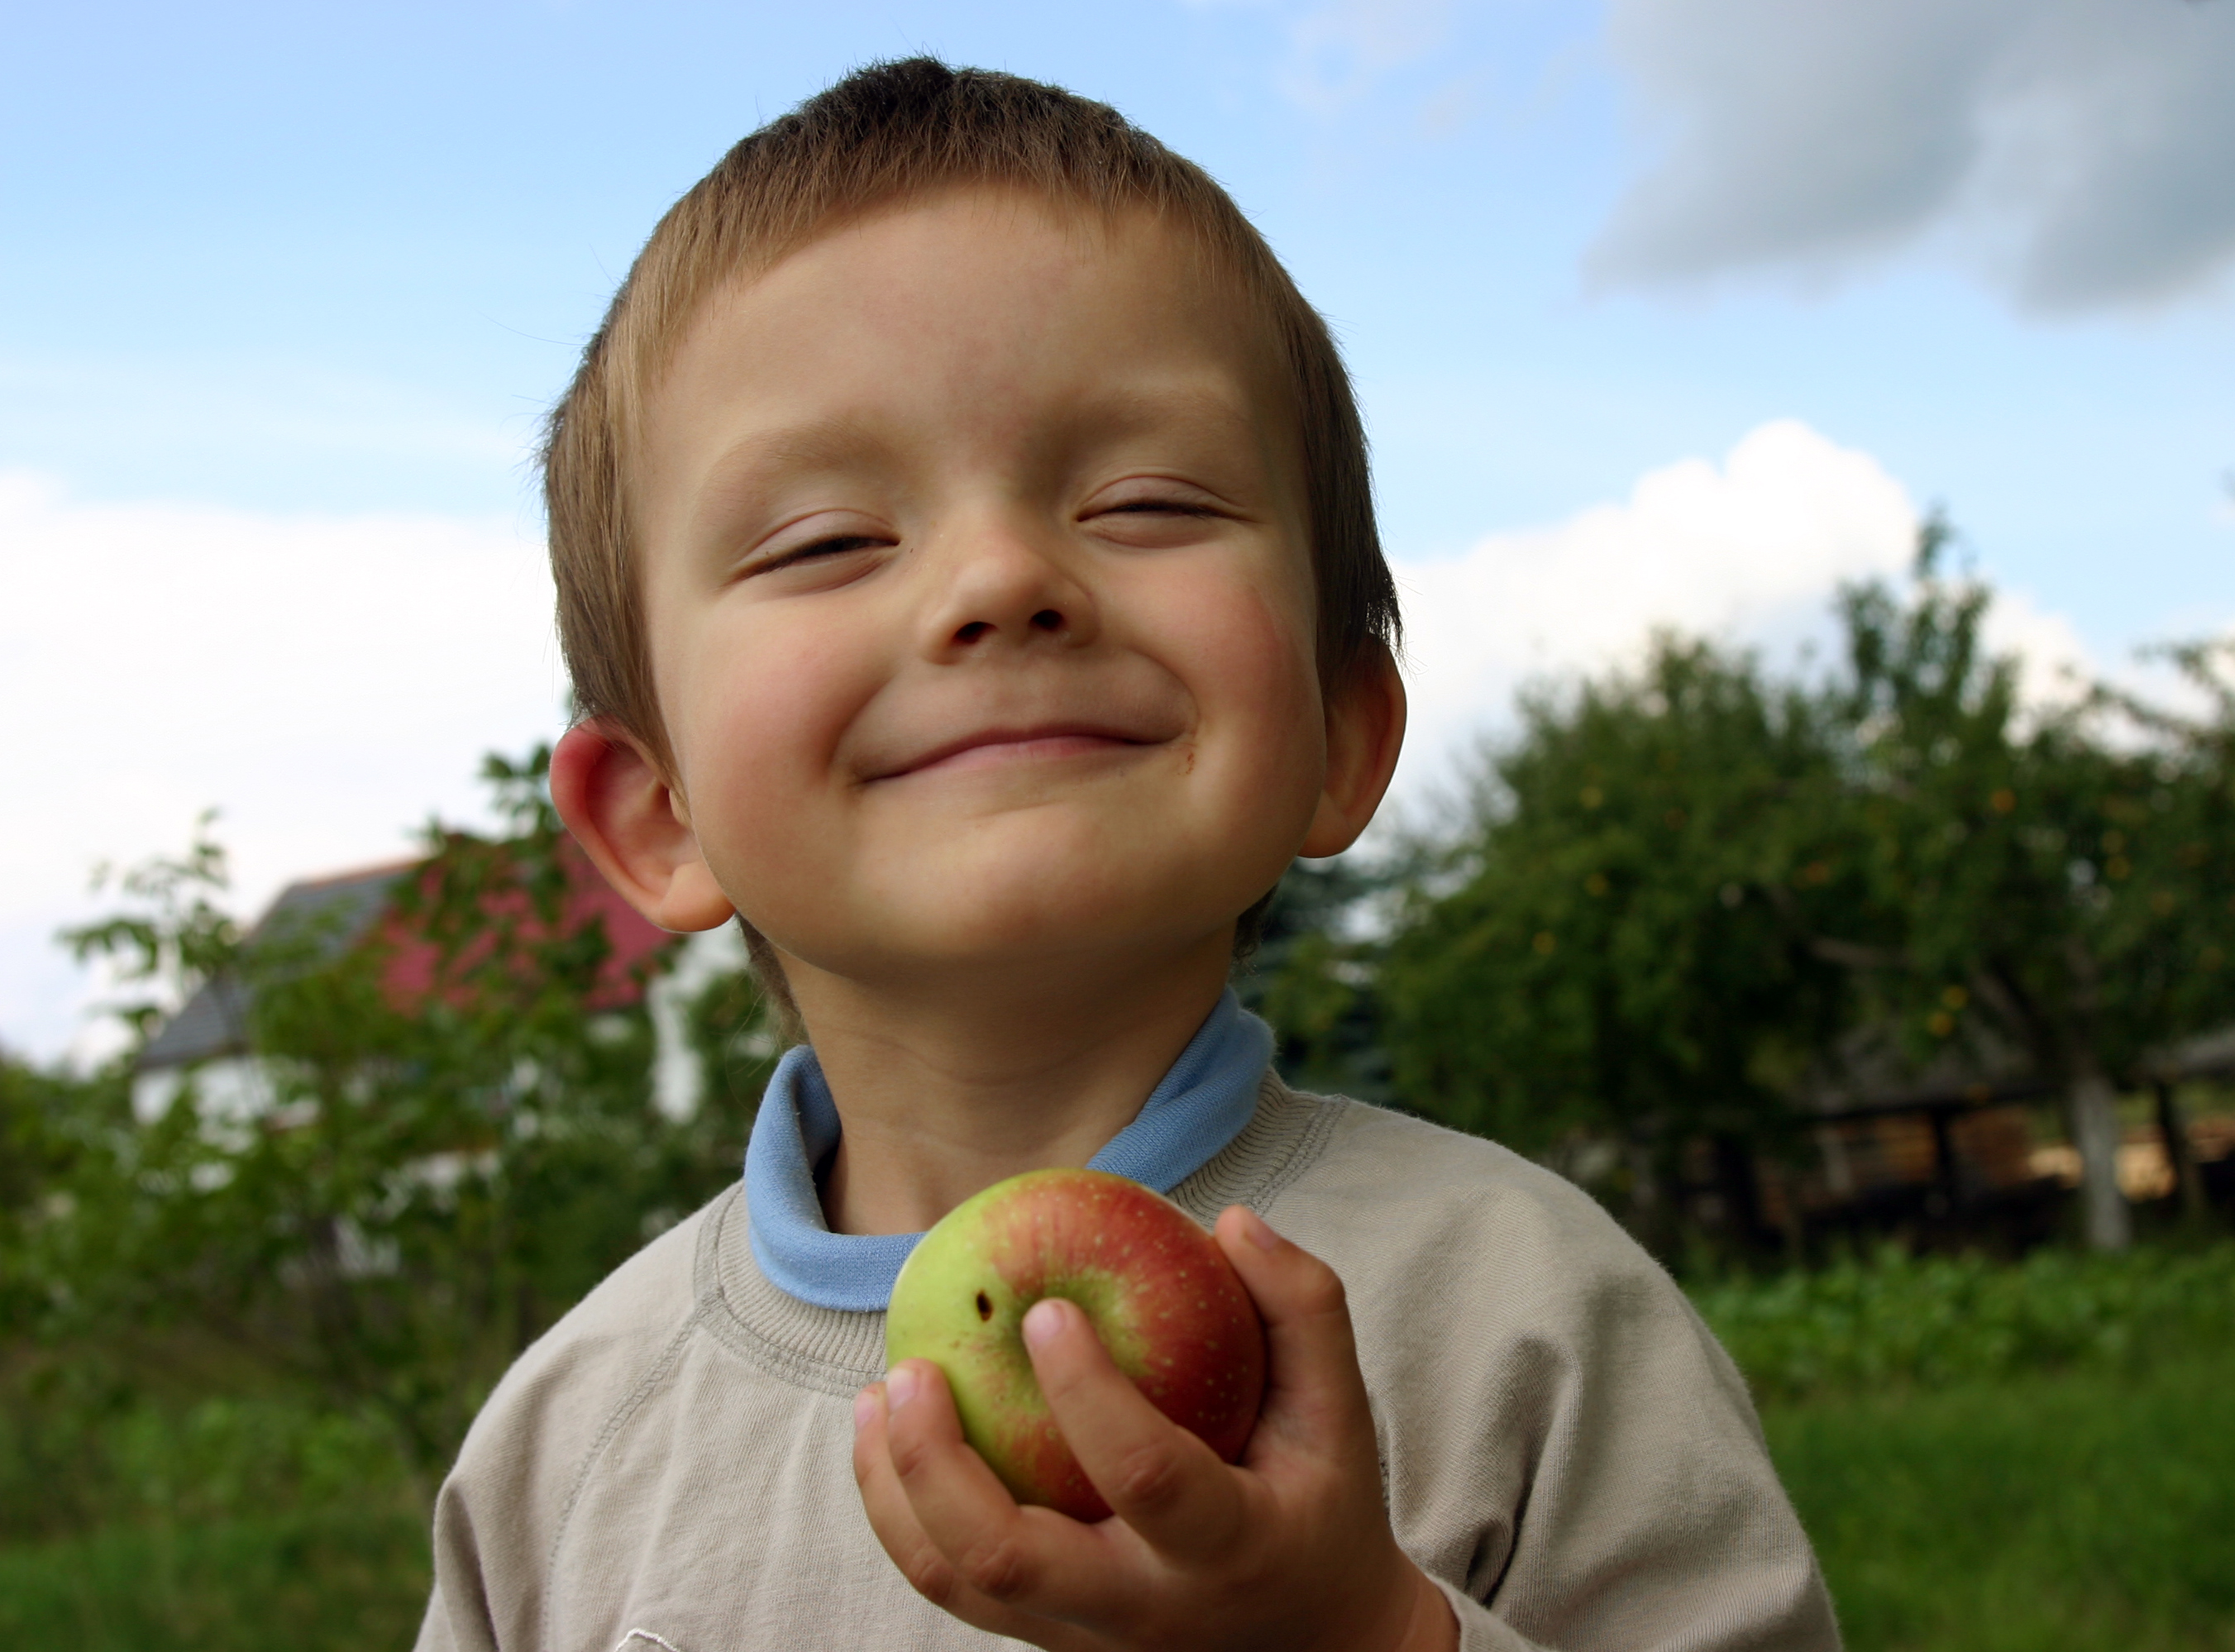 フリー画像 人物写真 子供ポートレイト 少年 男の子 外国の子供 笑顔 スマイル 林檎 リンゴ 画像素材なら 無料 フリー写真素材のフリーフォト